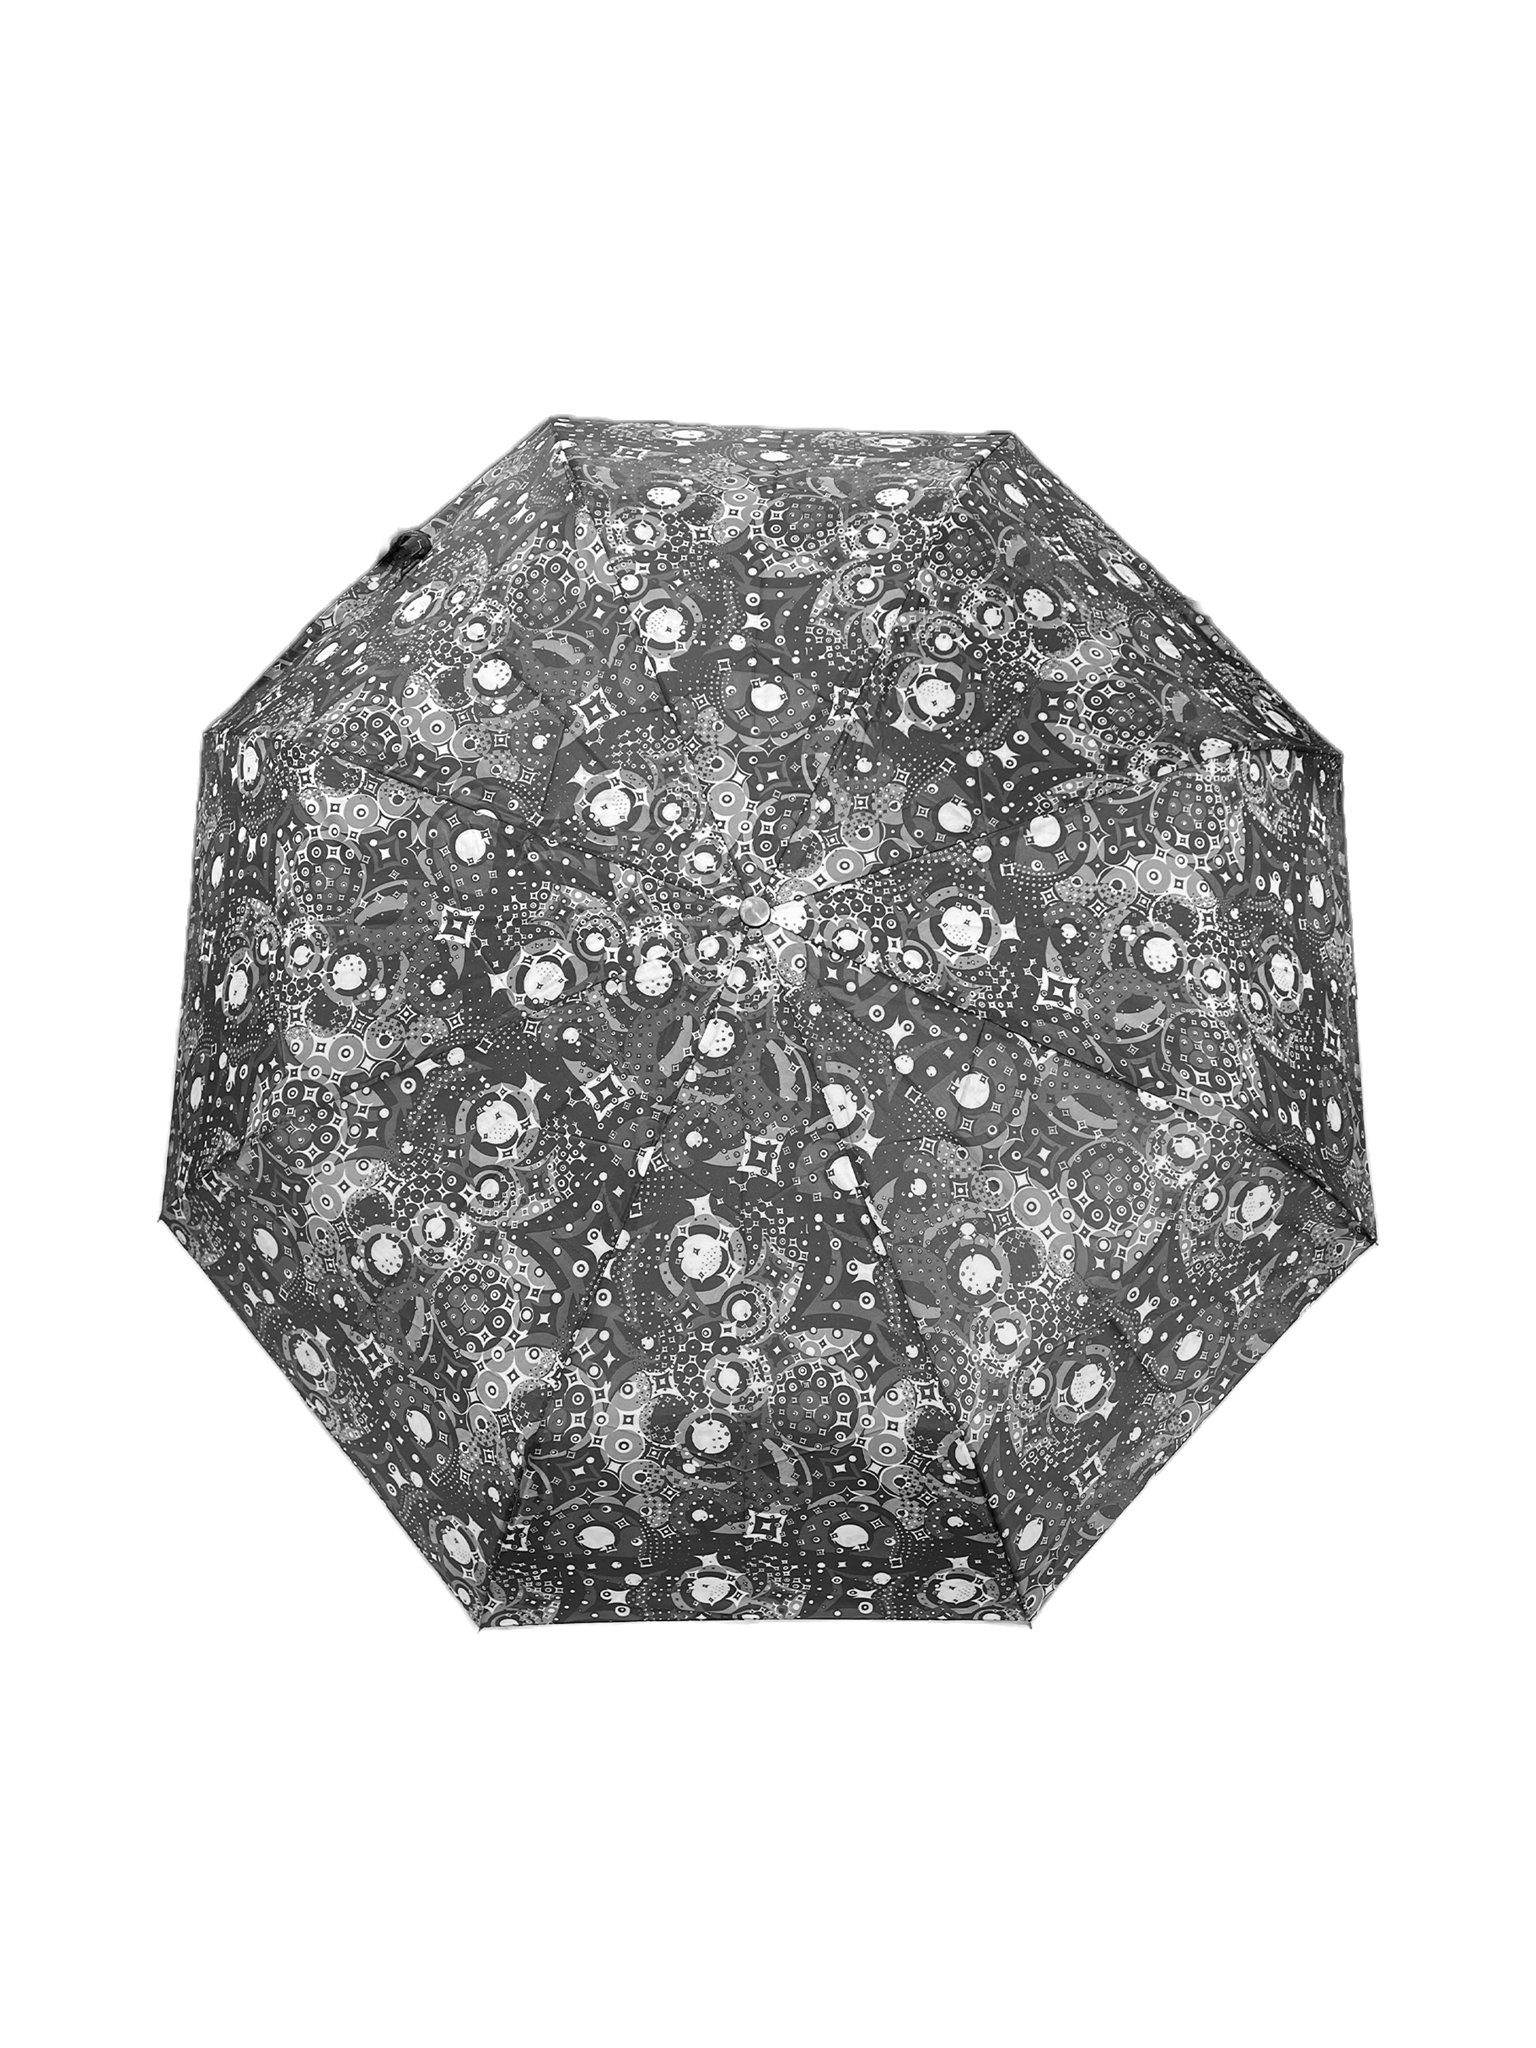 Paris Kleiner 6746 Taschenschirm, Taschenregenschirm Grau in Regenschirm ANELY Gemustert